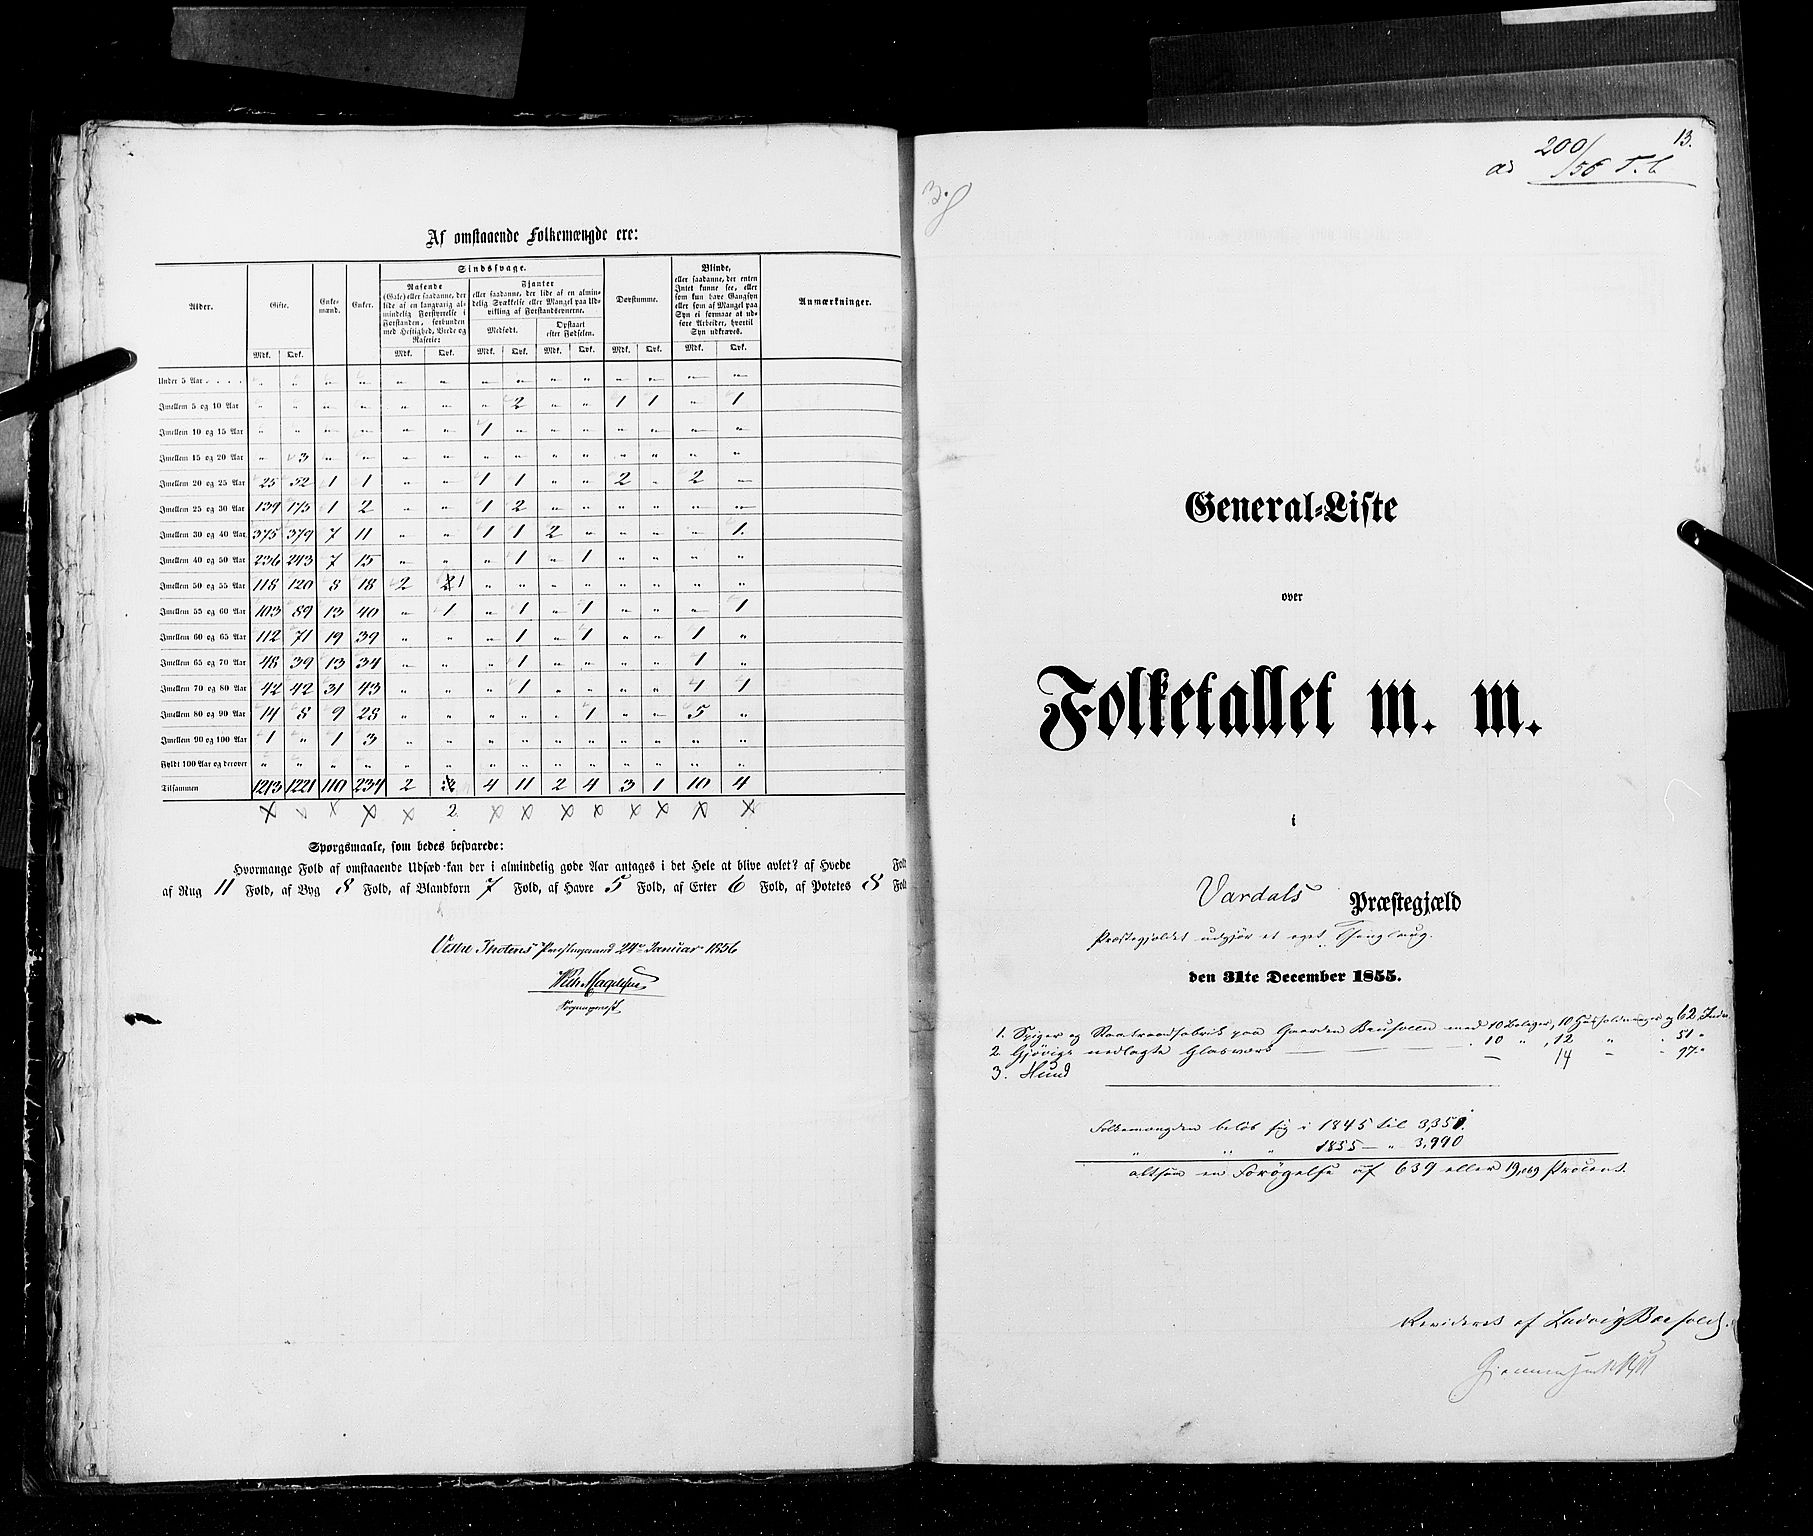 RA, Folketellingen 1855, bind 2: Kristians amt, Buskerud amt og Jarlsberg og Larvik amt, 1855, s. 13